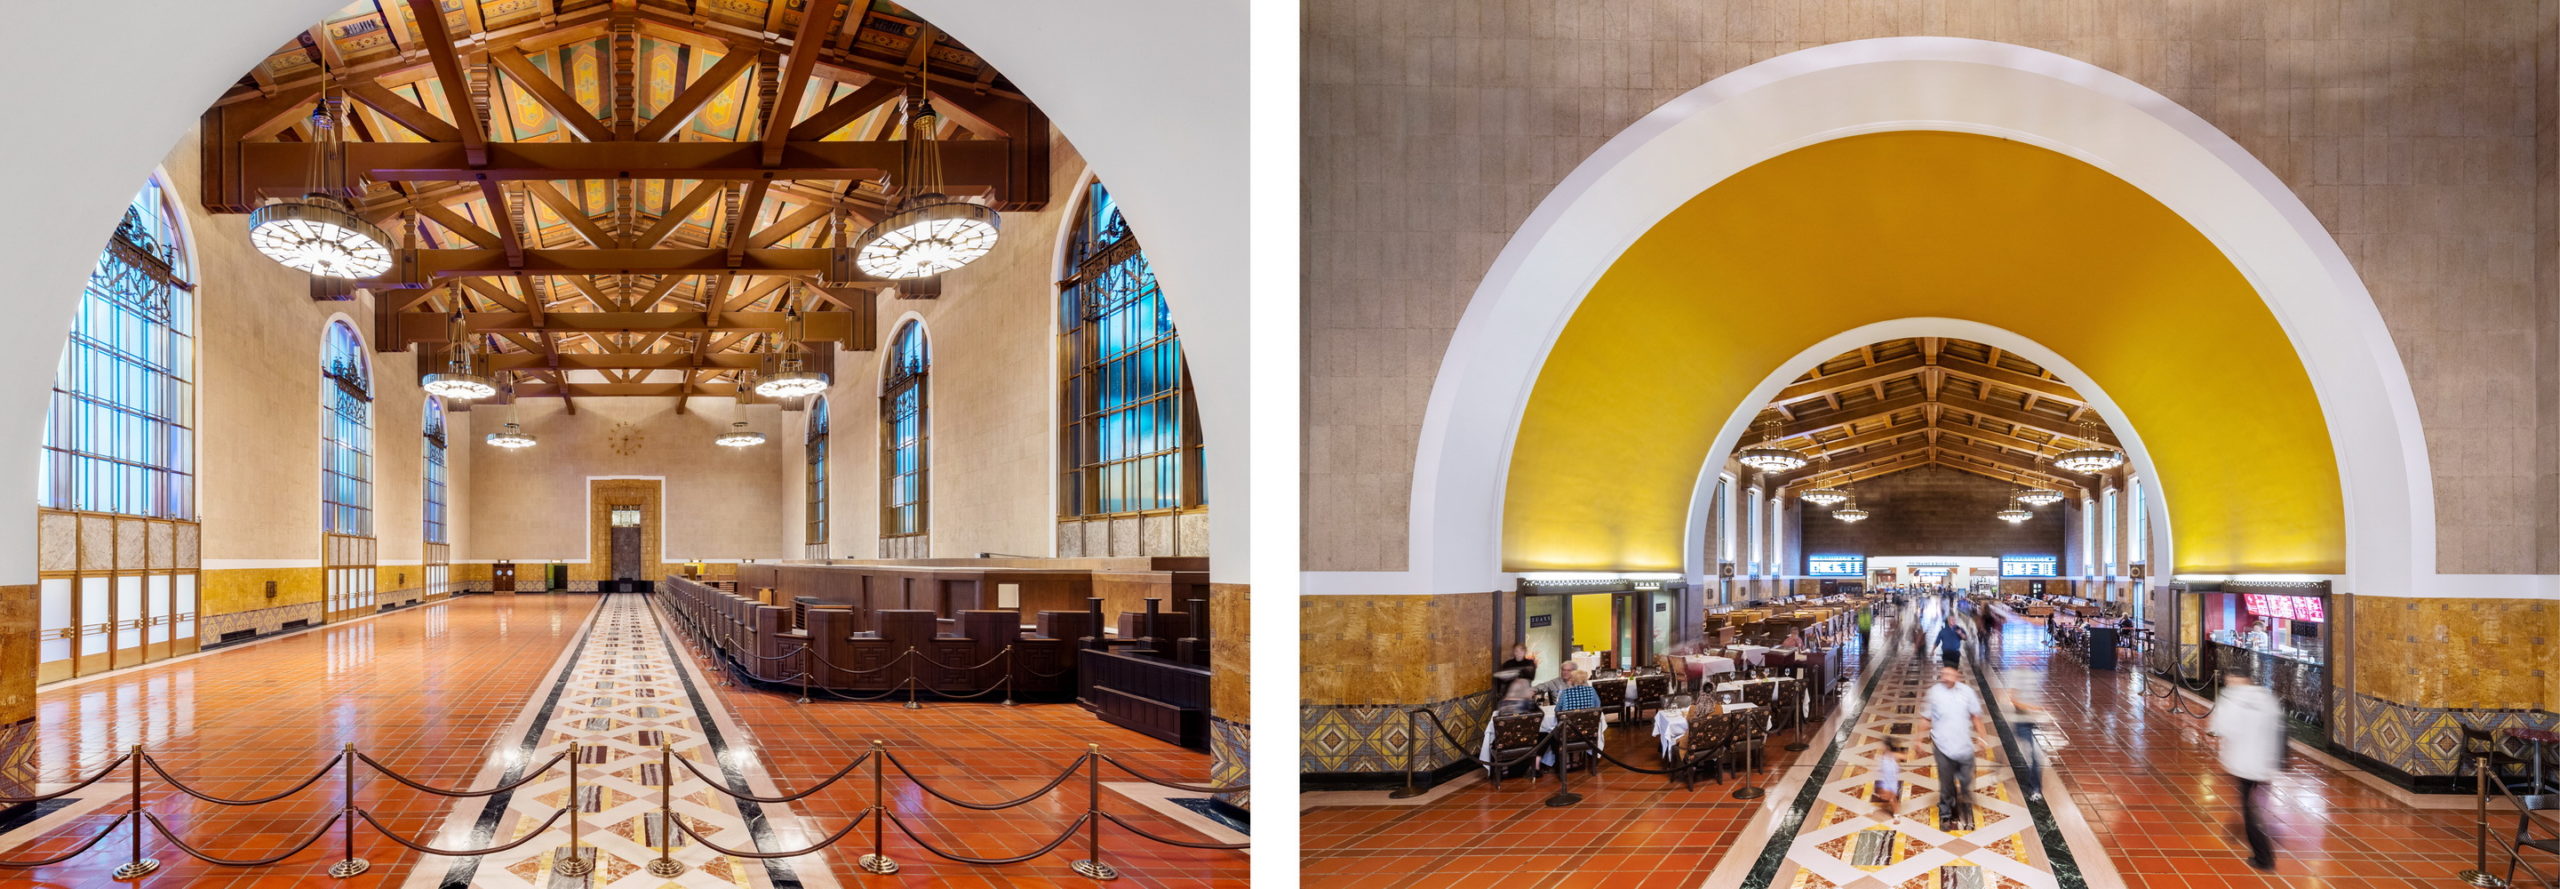 LA Union Station interior collage